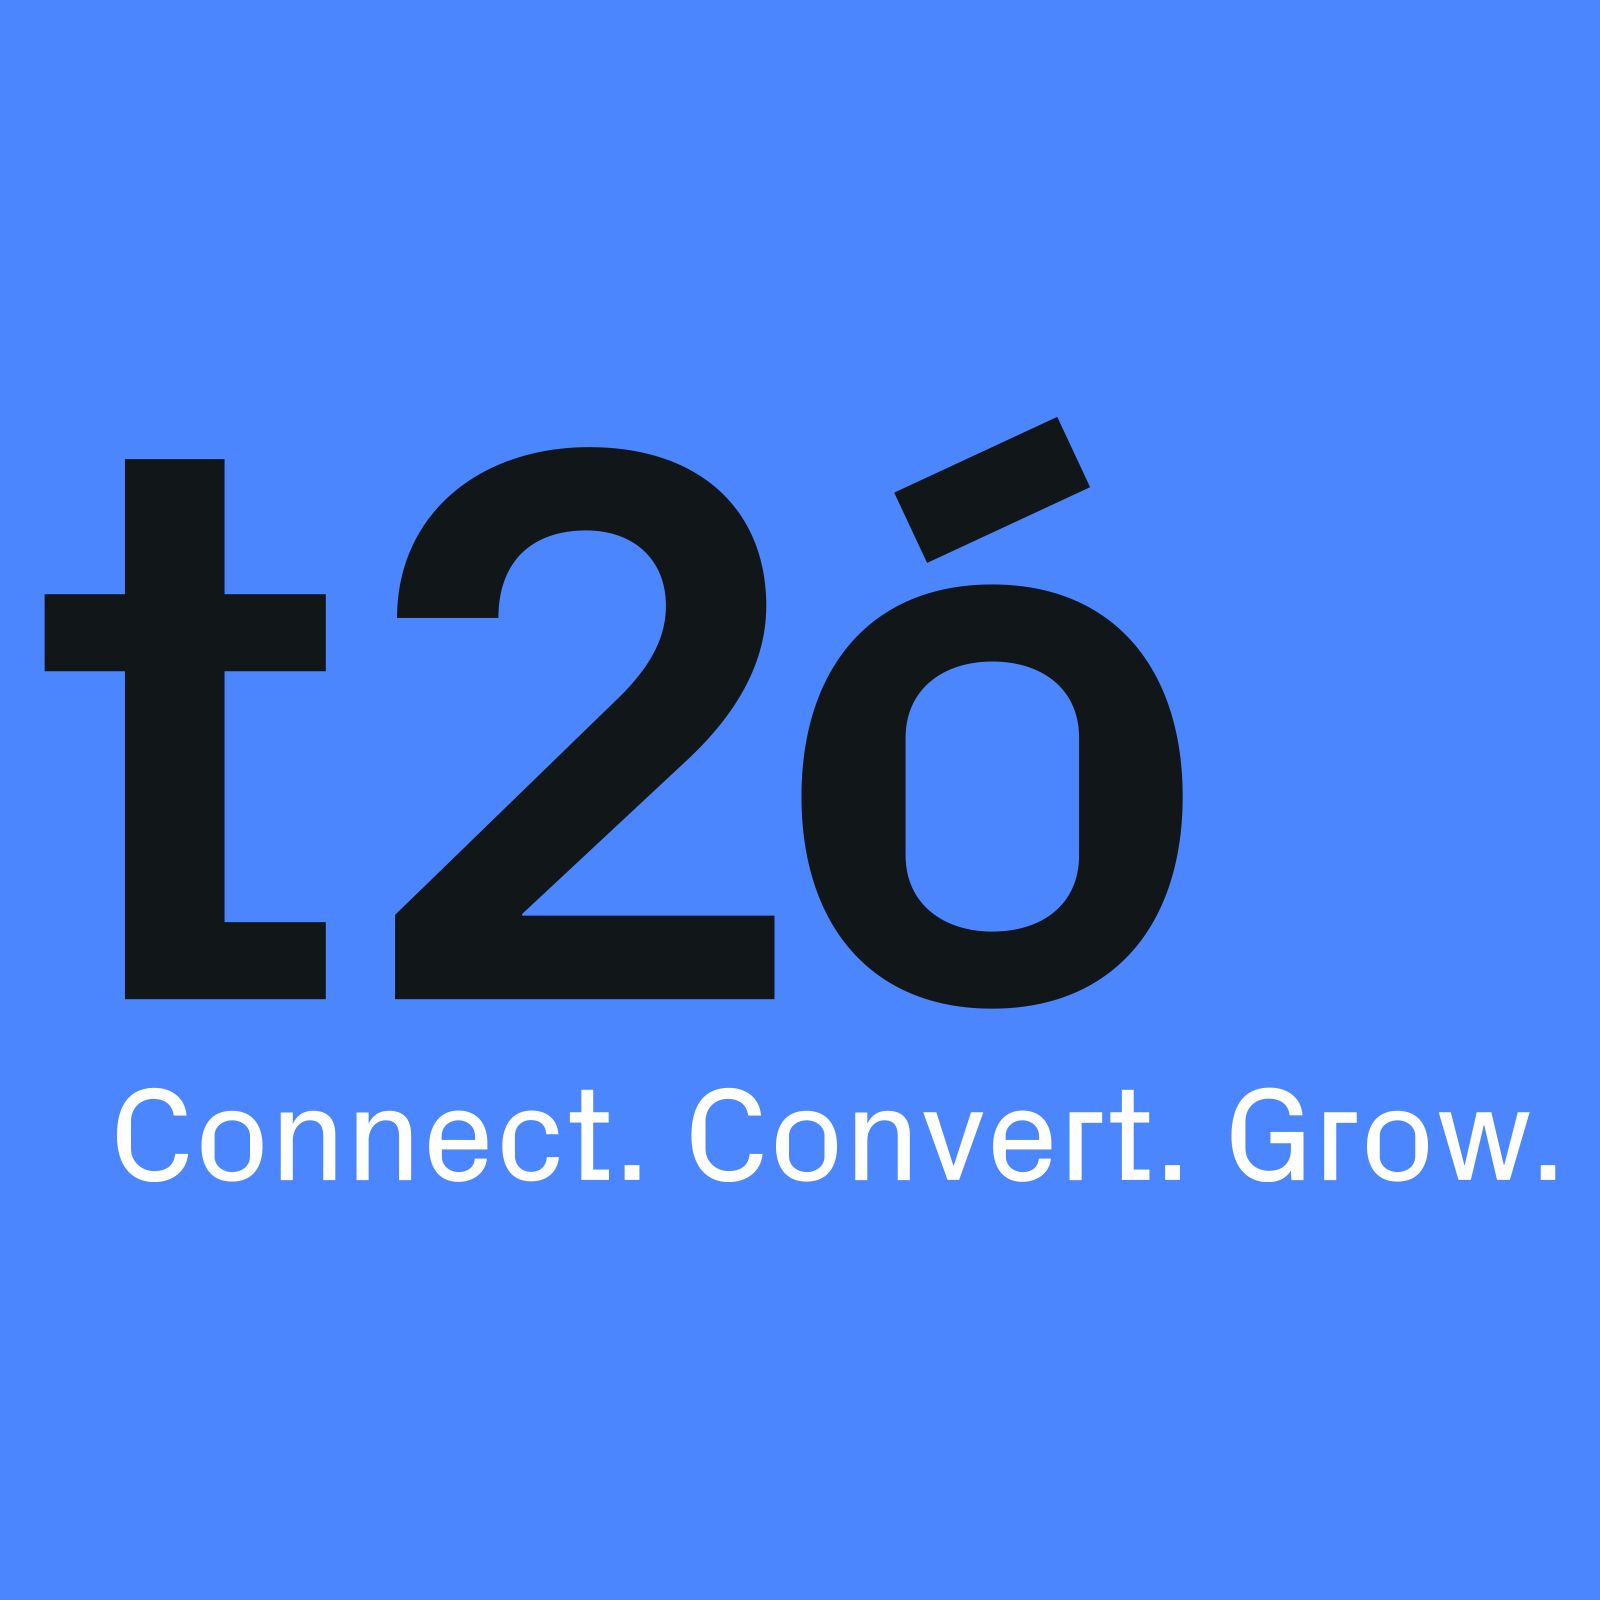 t2ó Logo